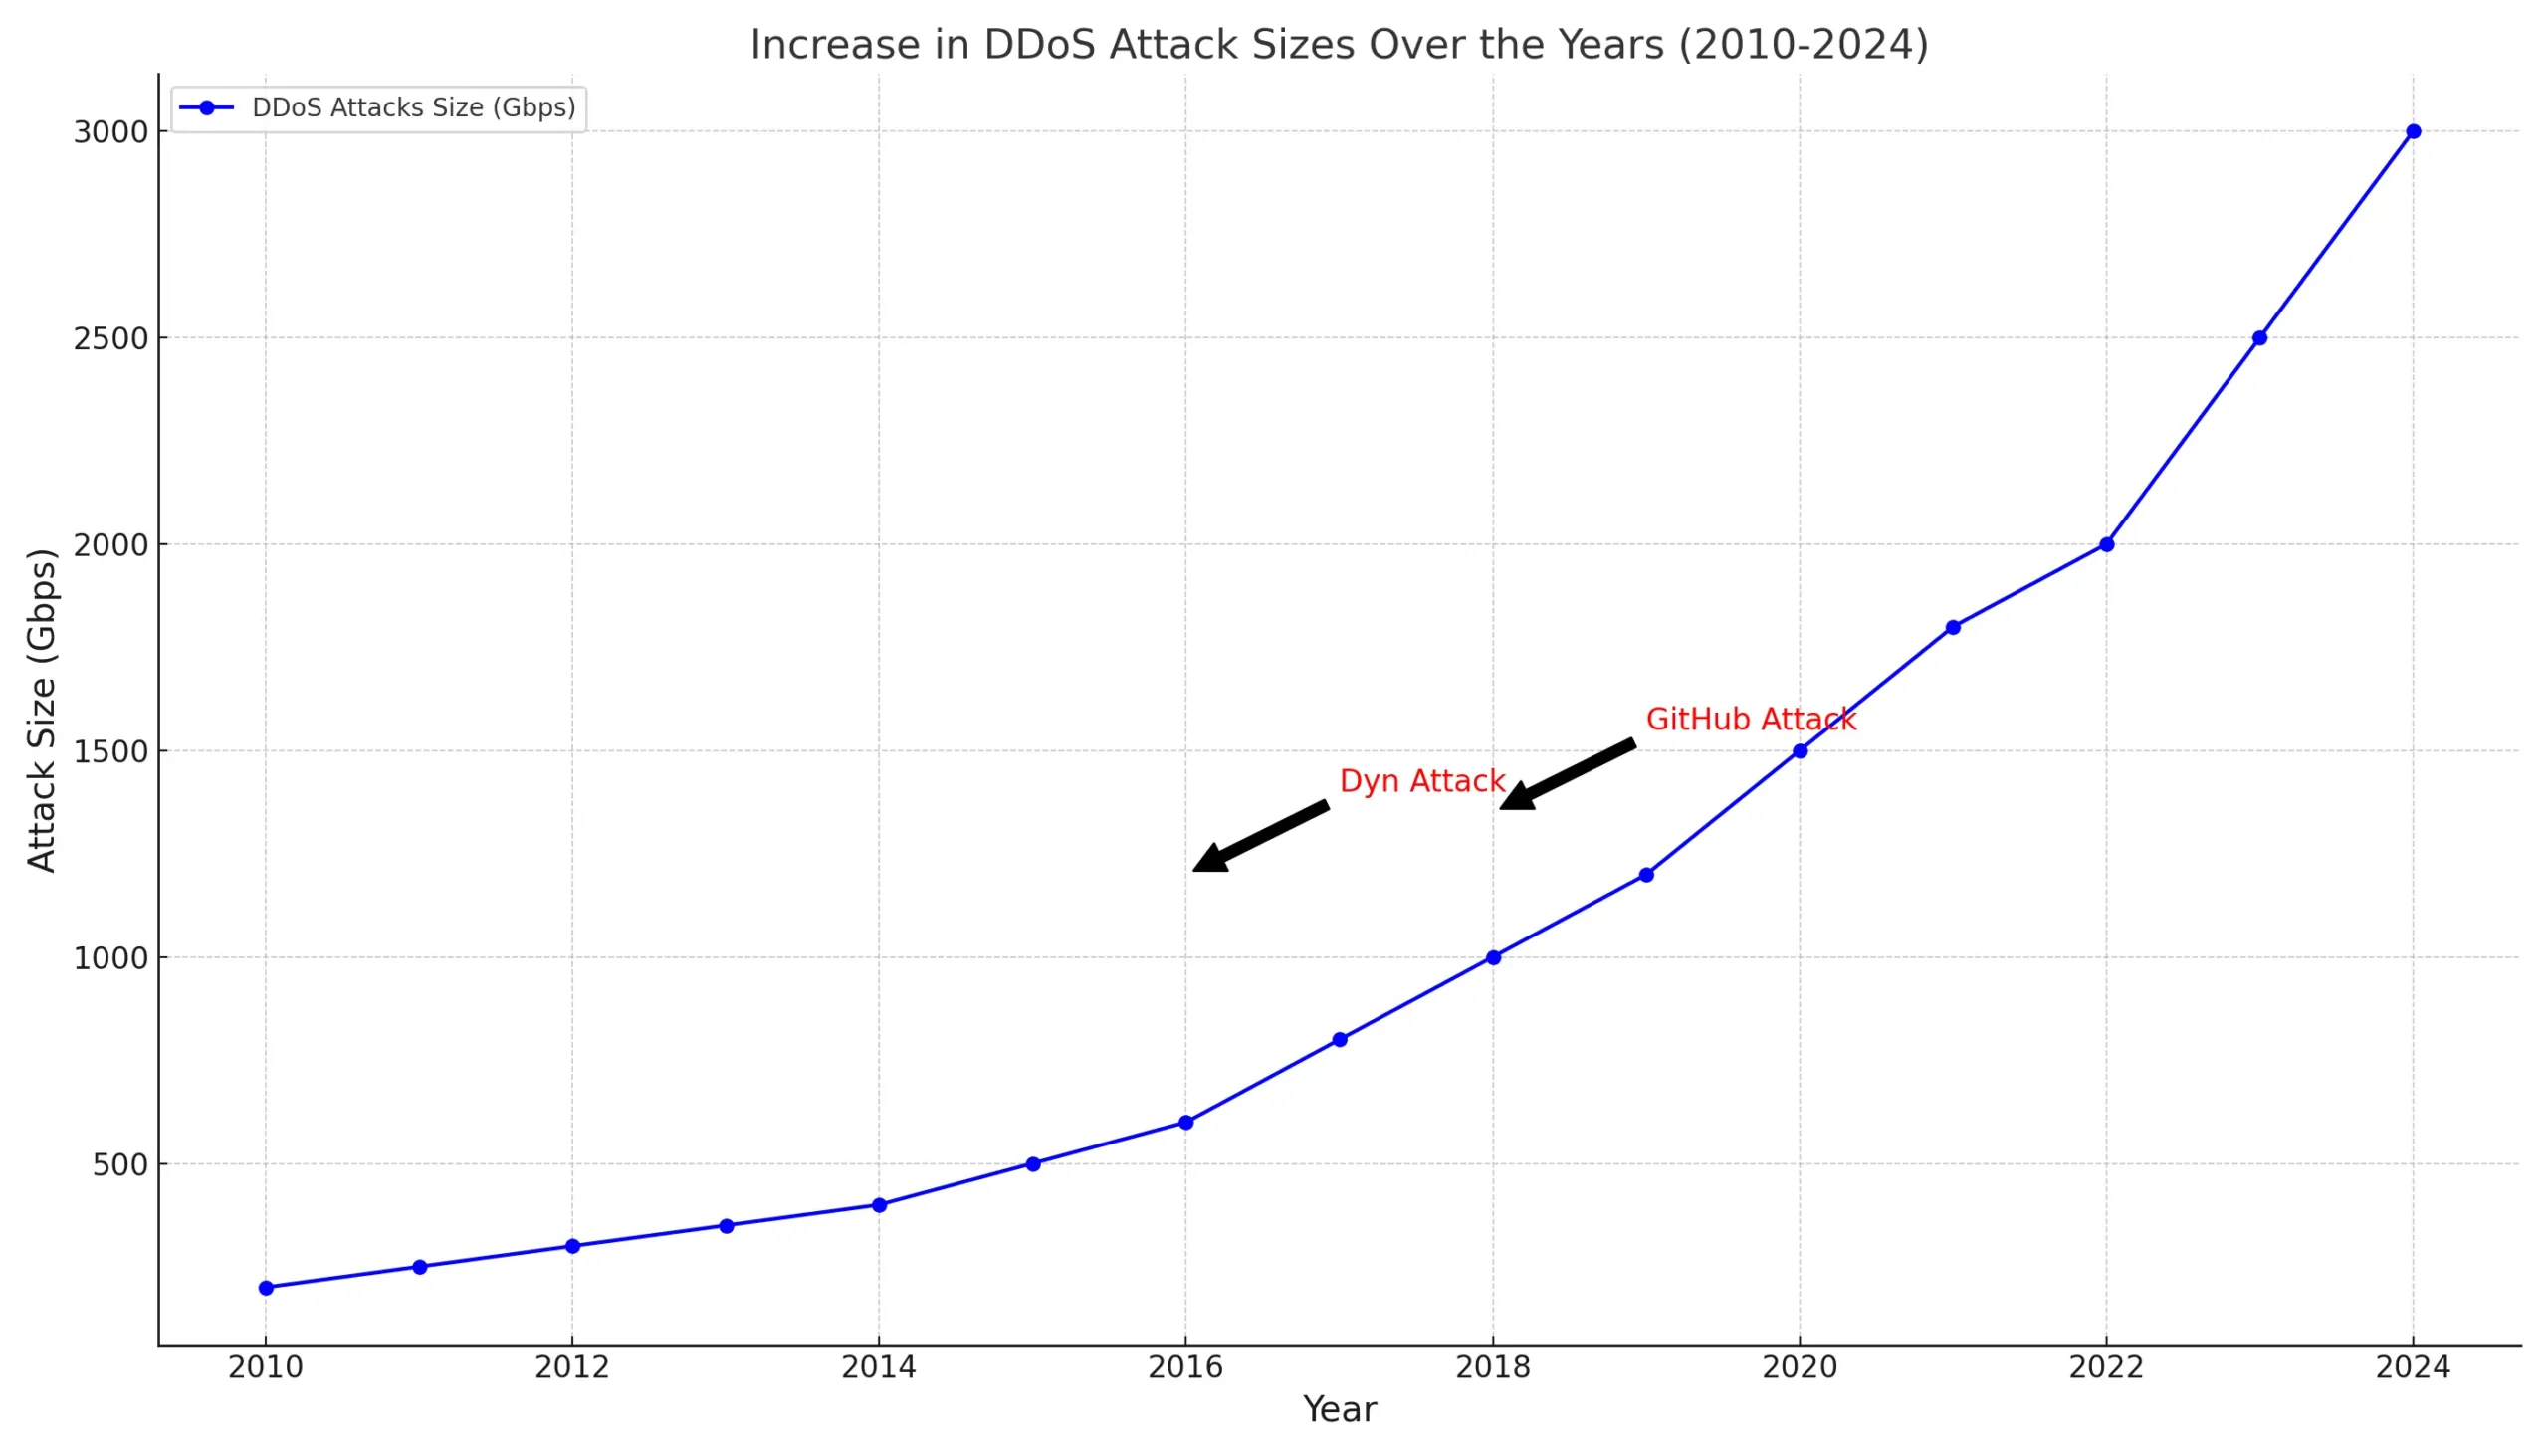 رسم بياني يوضح زيادة حجم هجمات DDoS من 2010 إلى 2024، مع تسليط الضوء على الهجمات الكبرى مثل GitHub وDyn.